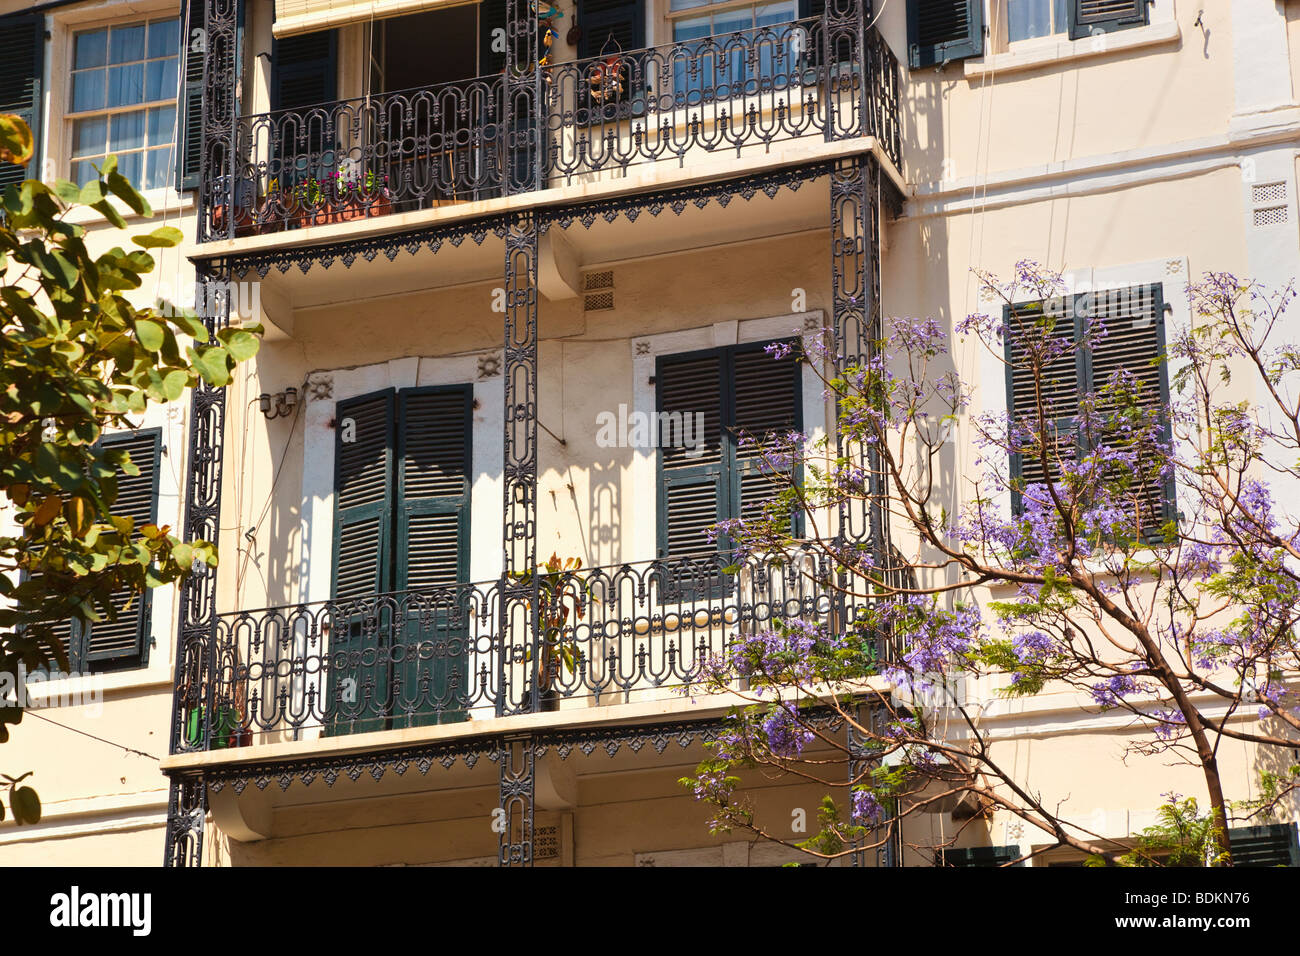 Gibraltar. Architecture typique dans la rue principale. Fer forgé, fenêtres à guillotine et volets de style méditerranéen. Banque D'Images